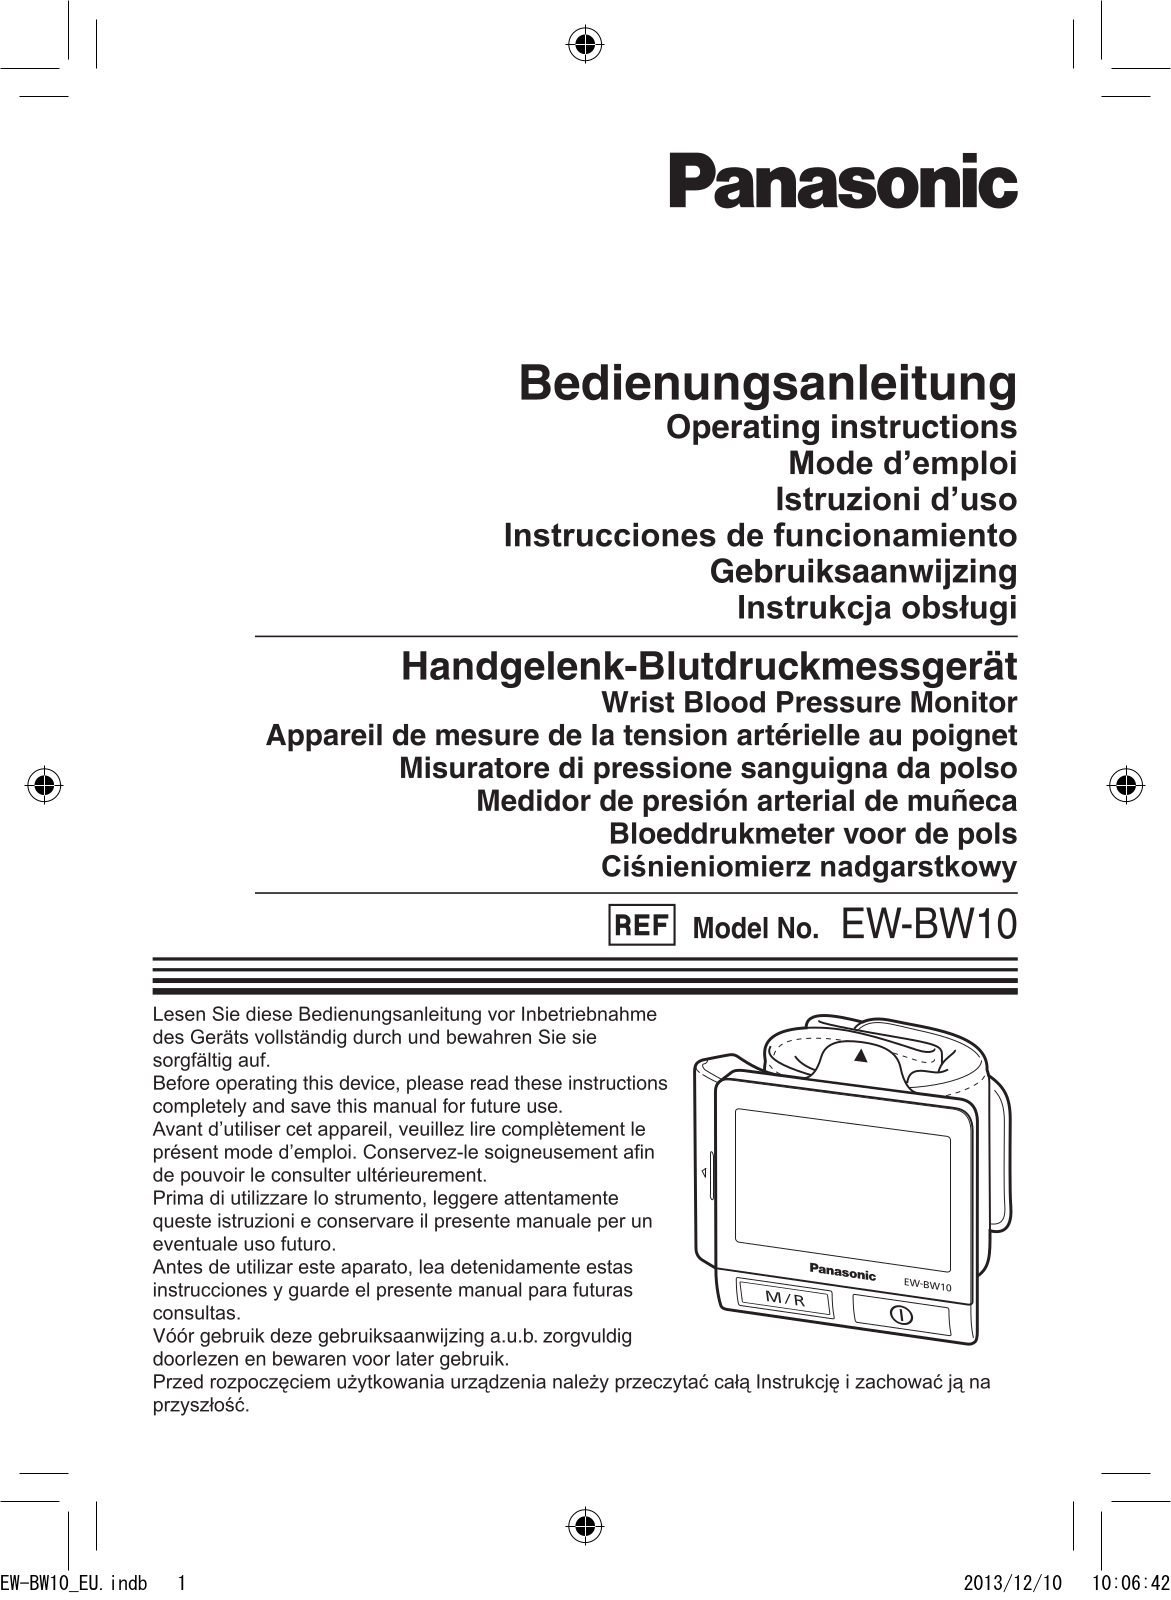 Panasonic EWBW10 Operation Manual